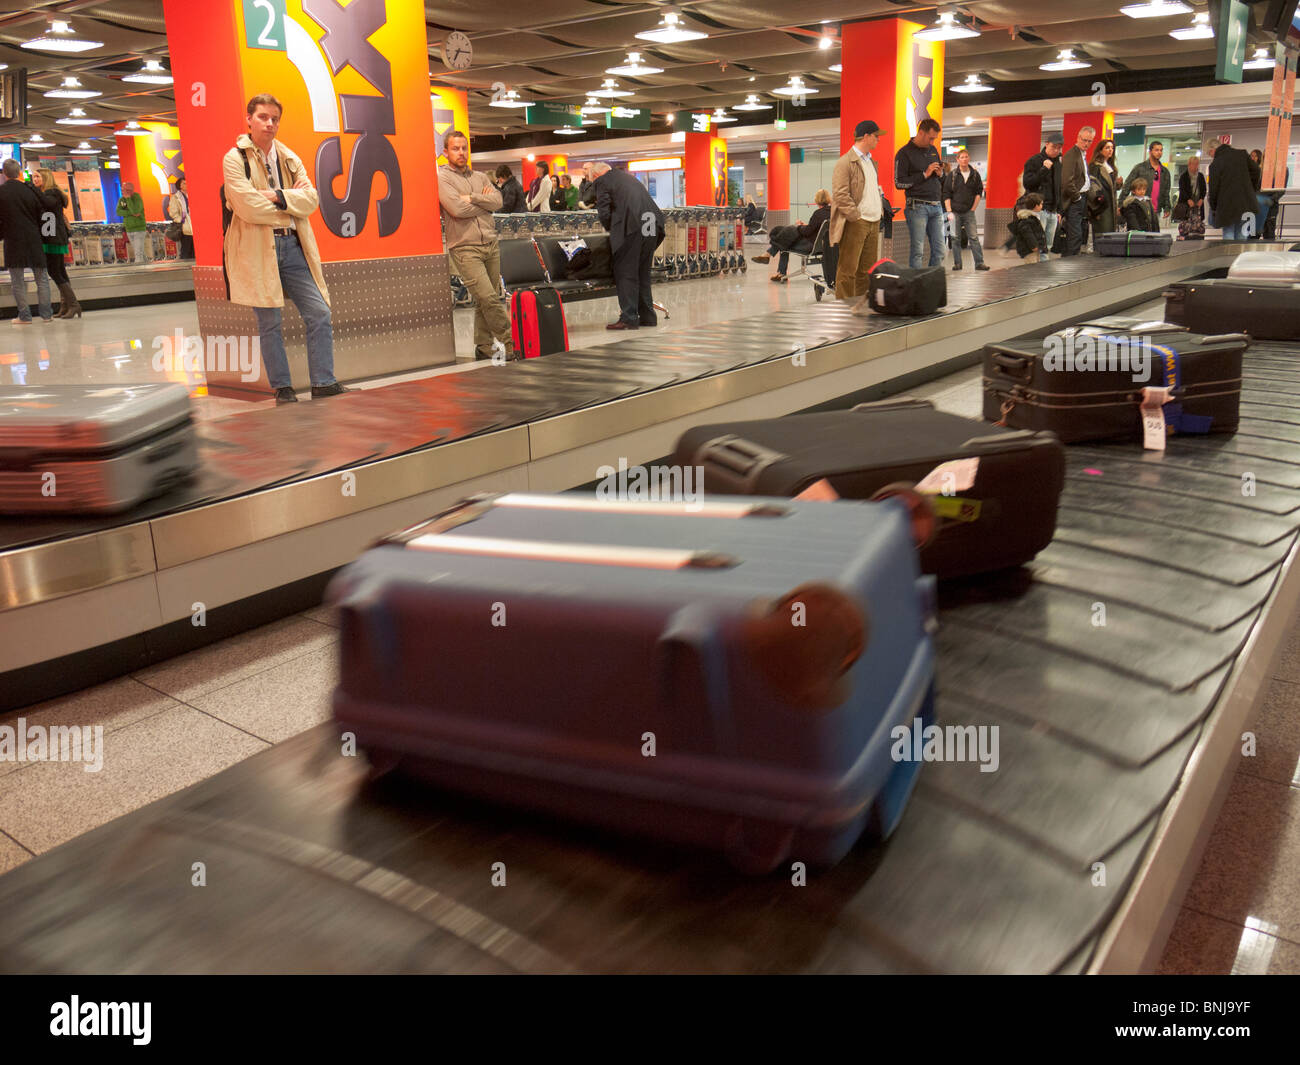 Fällen / Koffer / Stämme auf dem Förderband der Gepäckausgabe des  Flughafens Düsseldorf angekommen Stockfotografie - Alamy